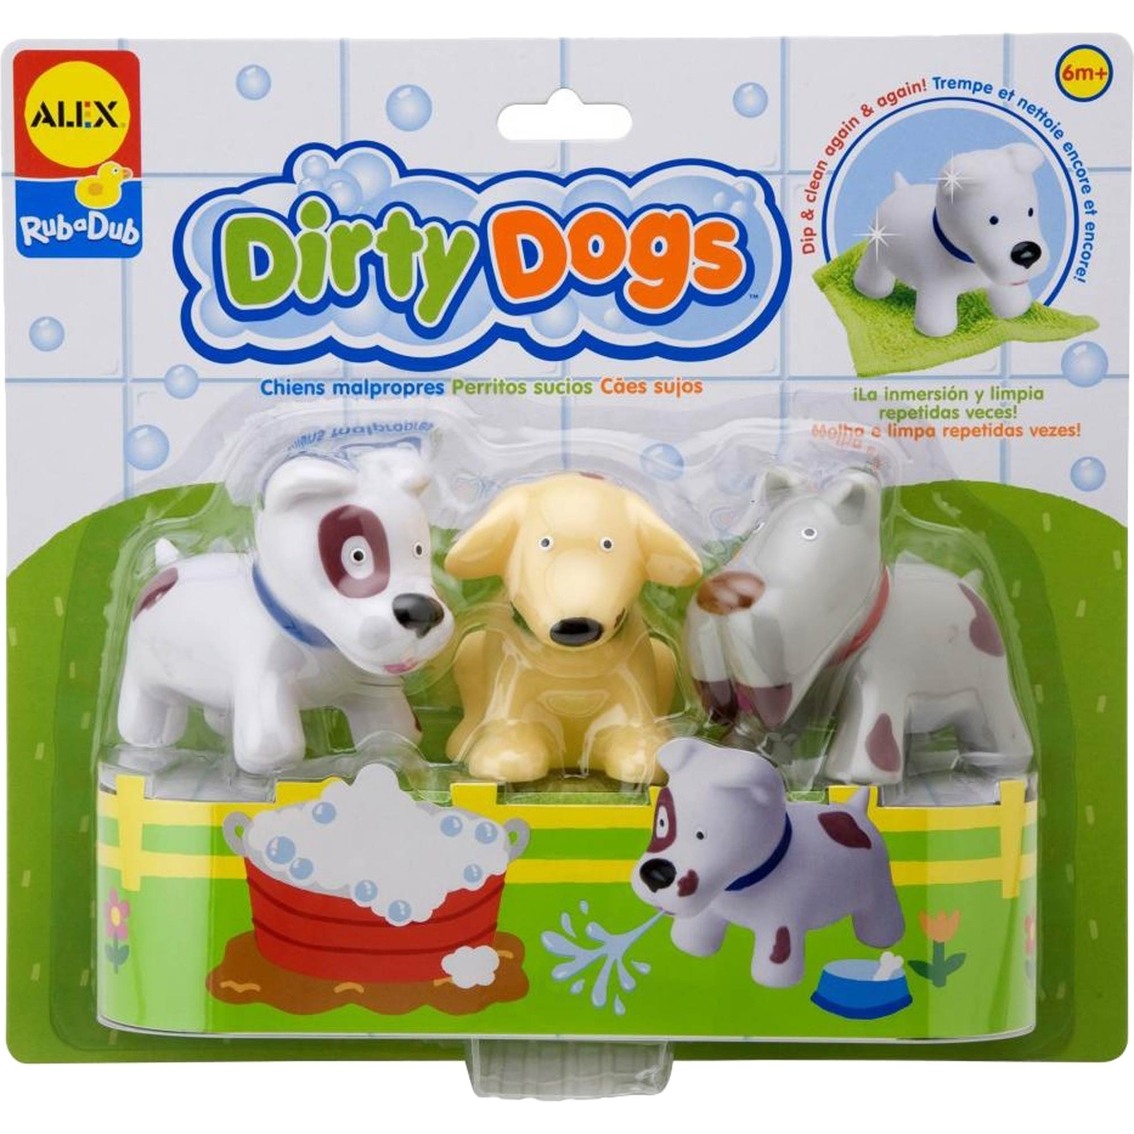 Alex Toys Rub A Dub Dirty Dogs, Bath Toys, Baby & Toys